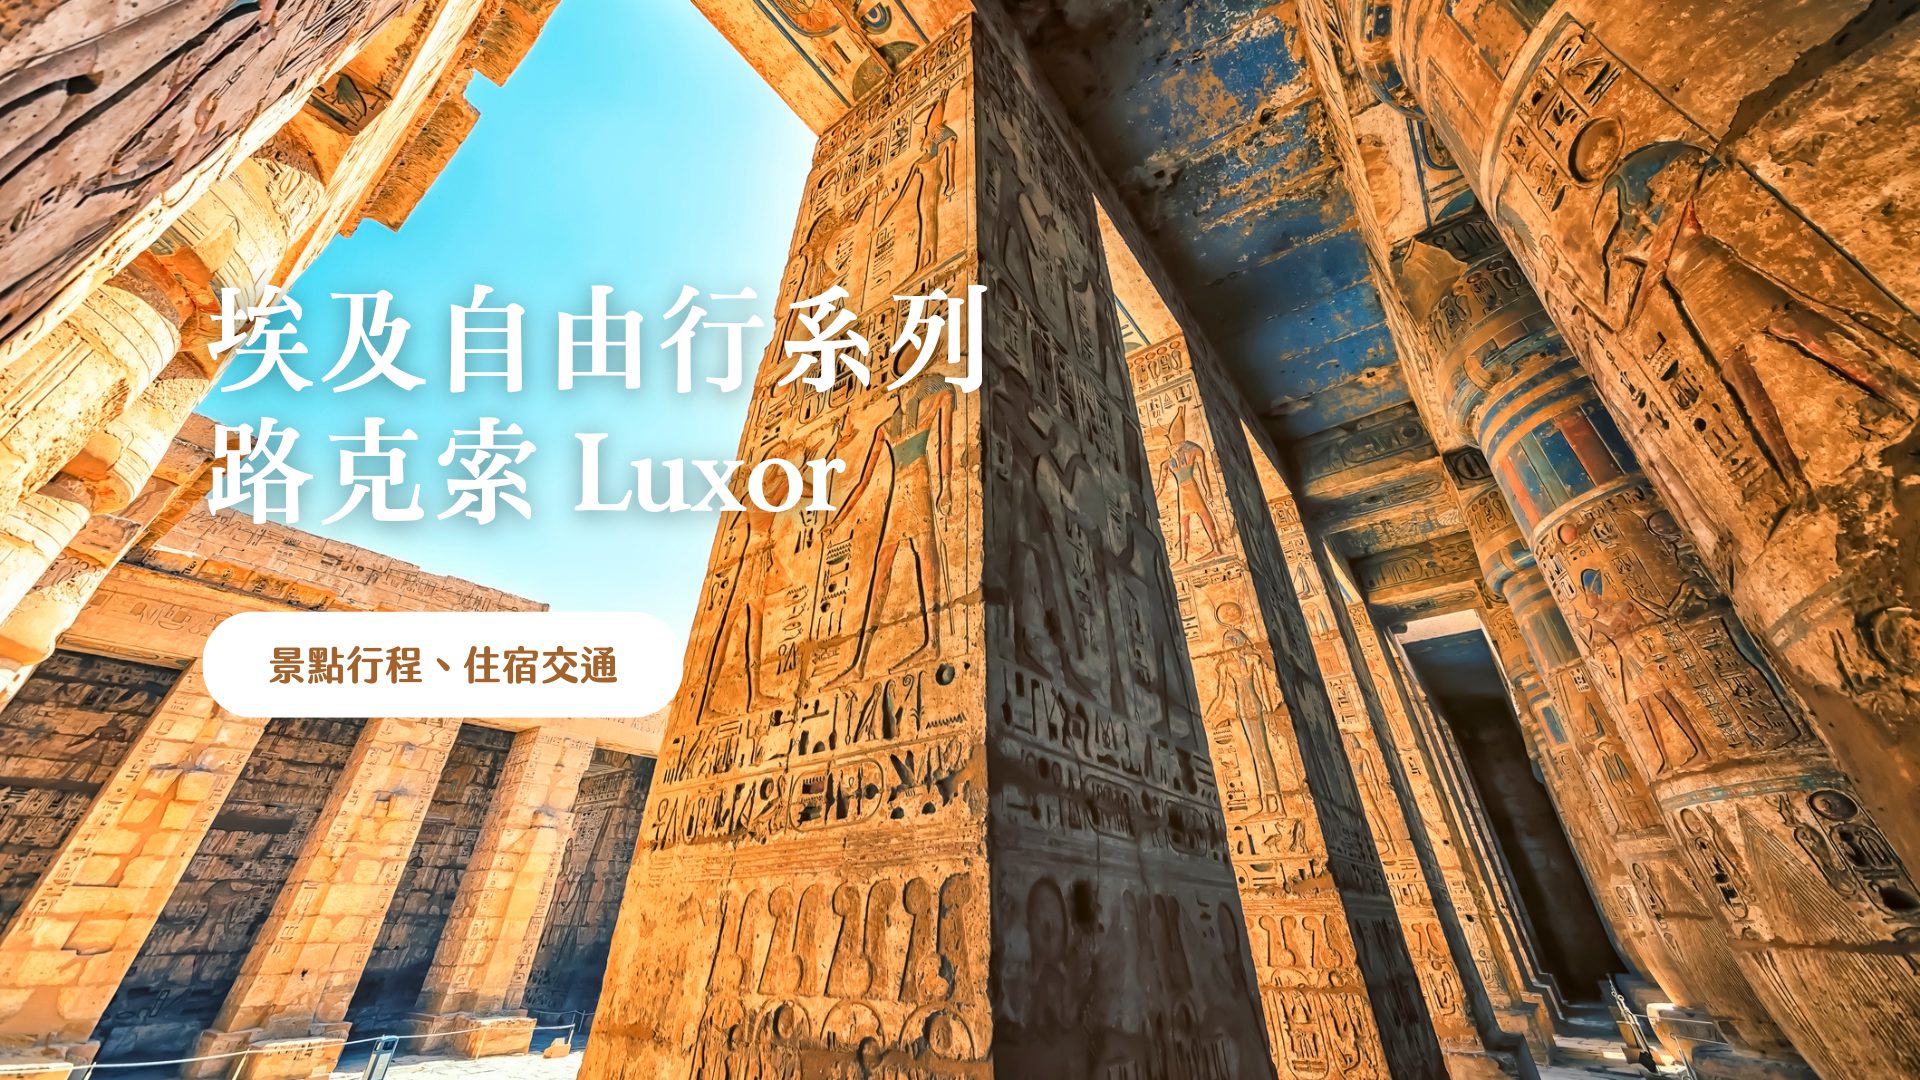 路克索 Luxor (古城底比斯) 景點介紹 歐洲出發，非洲埃及古文明自由行